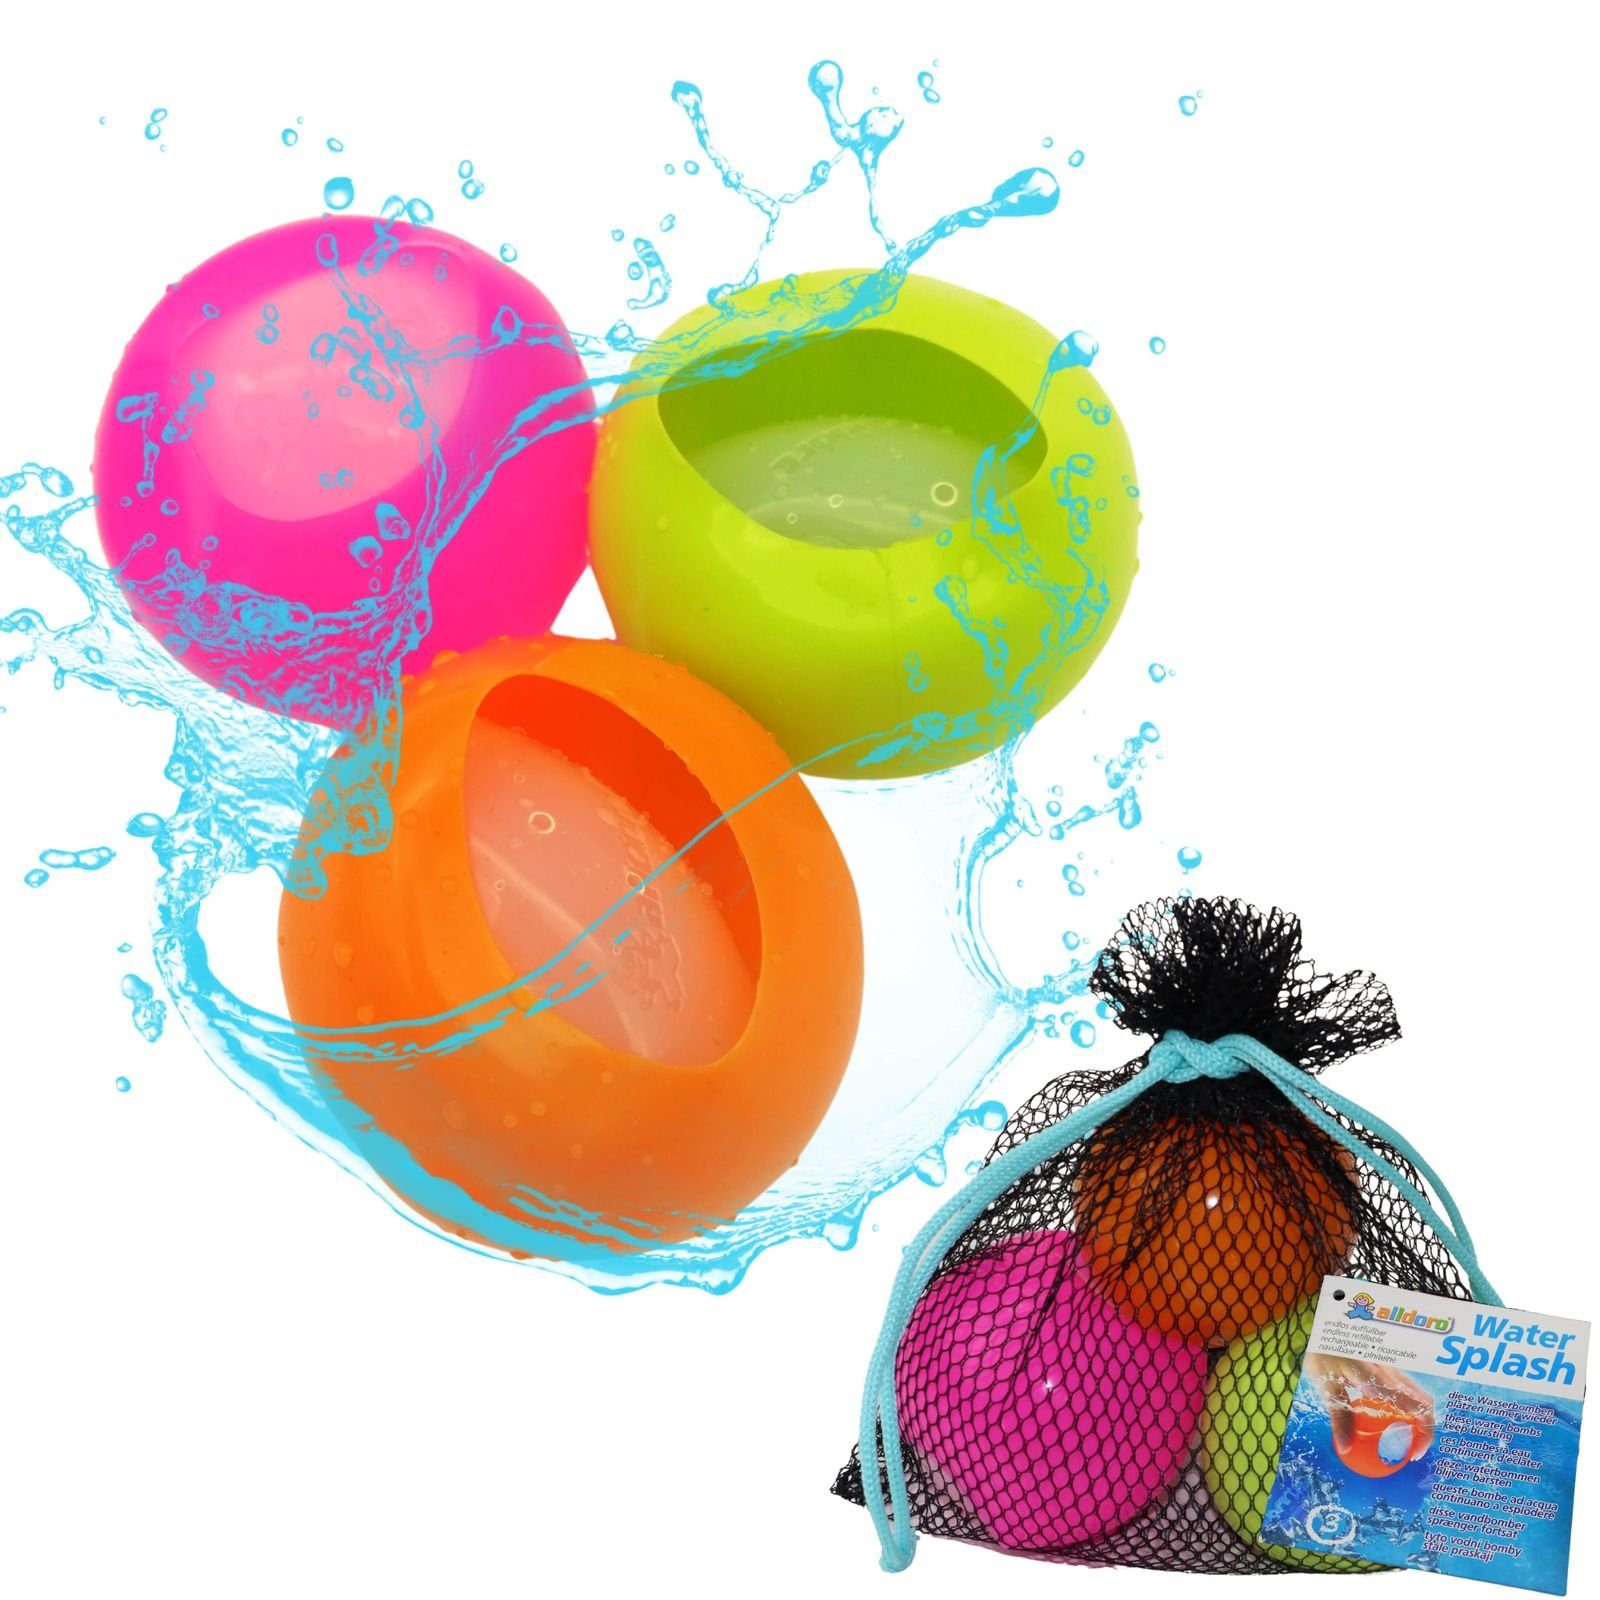 alldoro Wasserbombe 63037, Water Splash, wiederverwendbar, 3er Set in pink, grün und orange